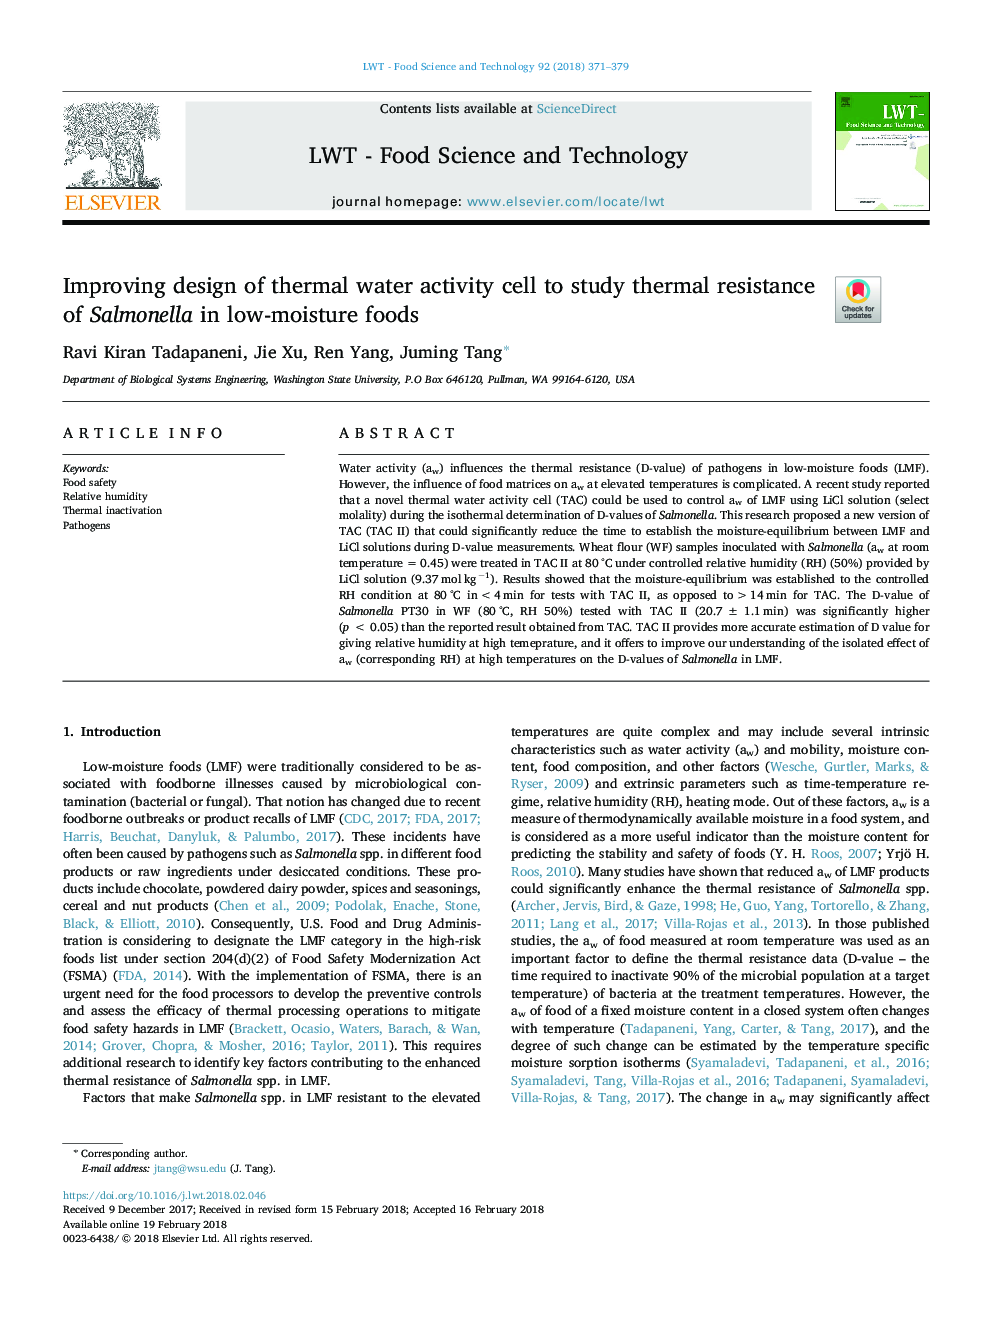 بهبود طراحی سلول های فعالیت آب حرارتی برای بررسی مقاومت حرارتی سالمونلا در غذاهای کم 